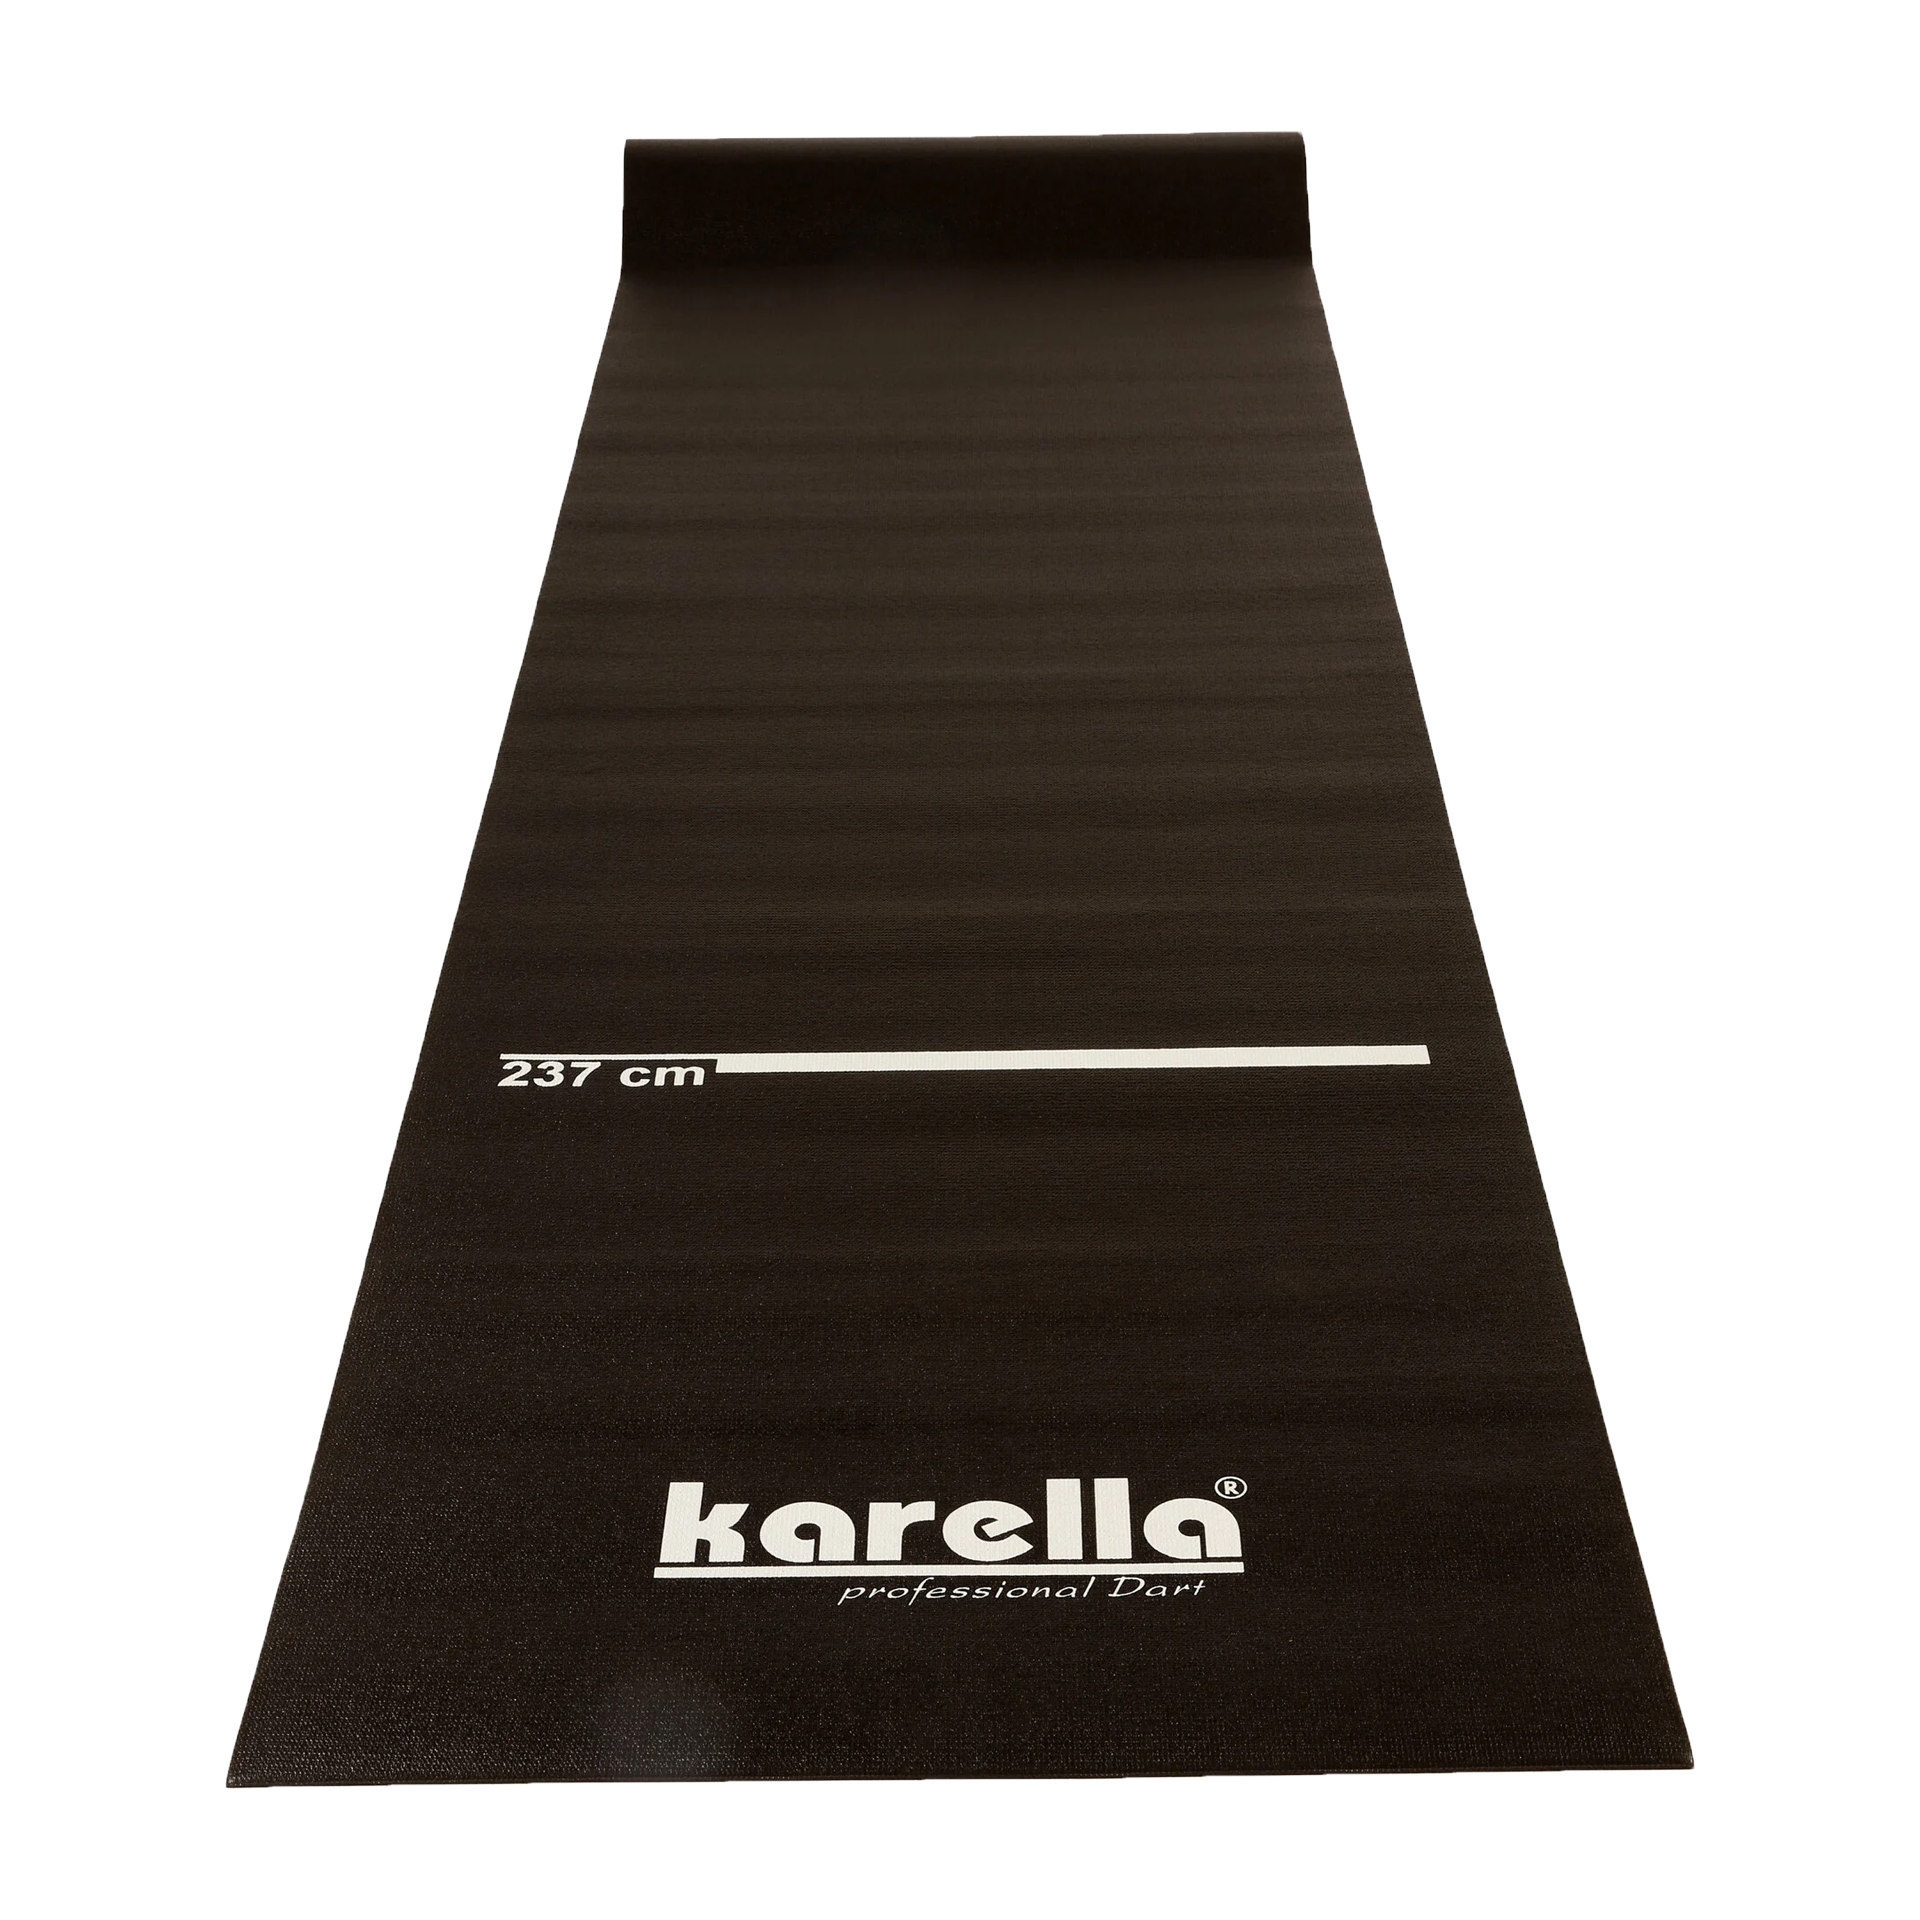 E-Dartboard 25 Karella kar_8089-01 CB |